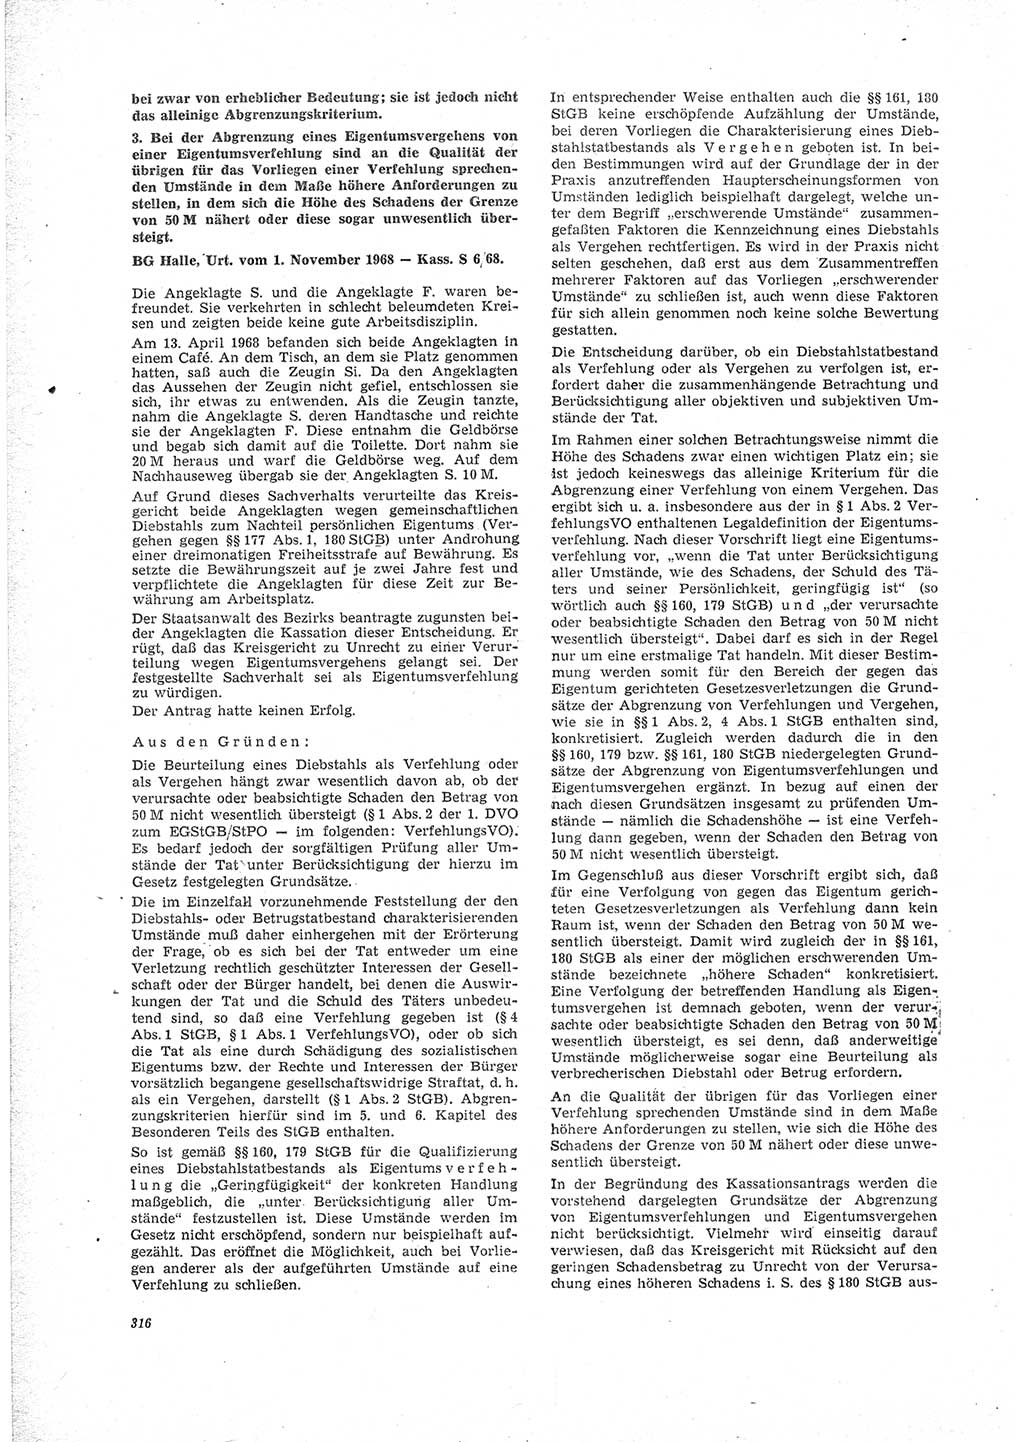 Neue Justiz (NJ), Zeitschrift für Recht und Rechtswissenschaft [Deutsche Demokratische Republik (DDR)], 23. Jahrgang 1969, Seite 316 (NJ DDR 1969, S. 316)